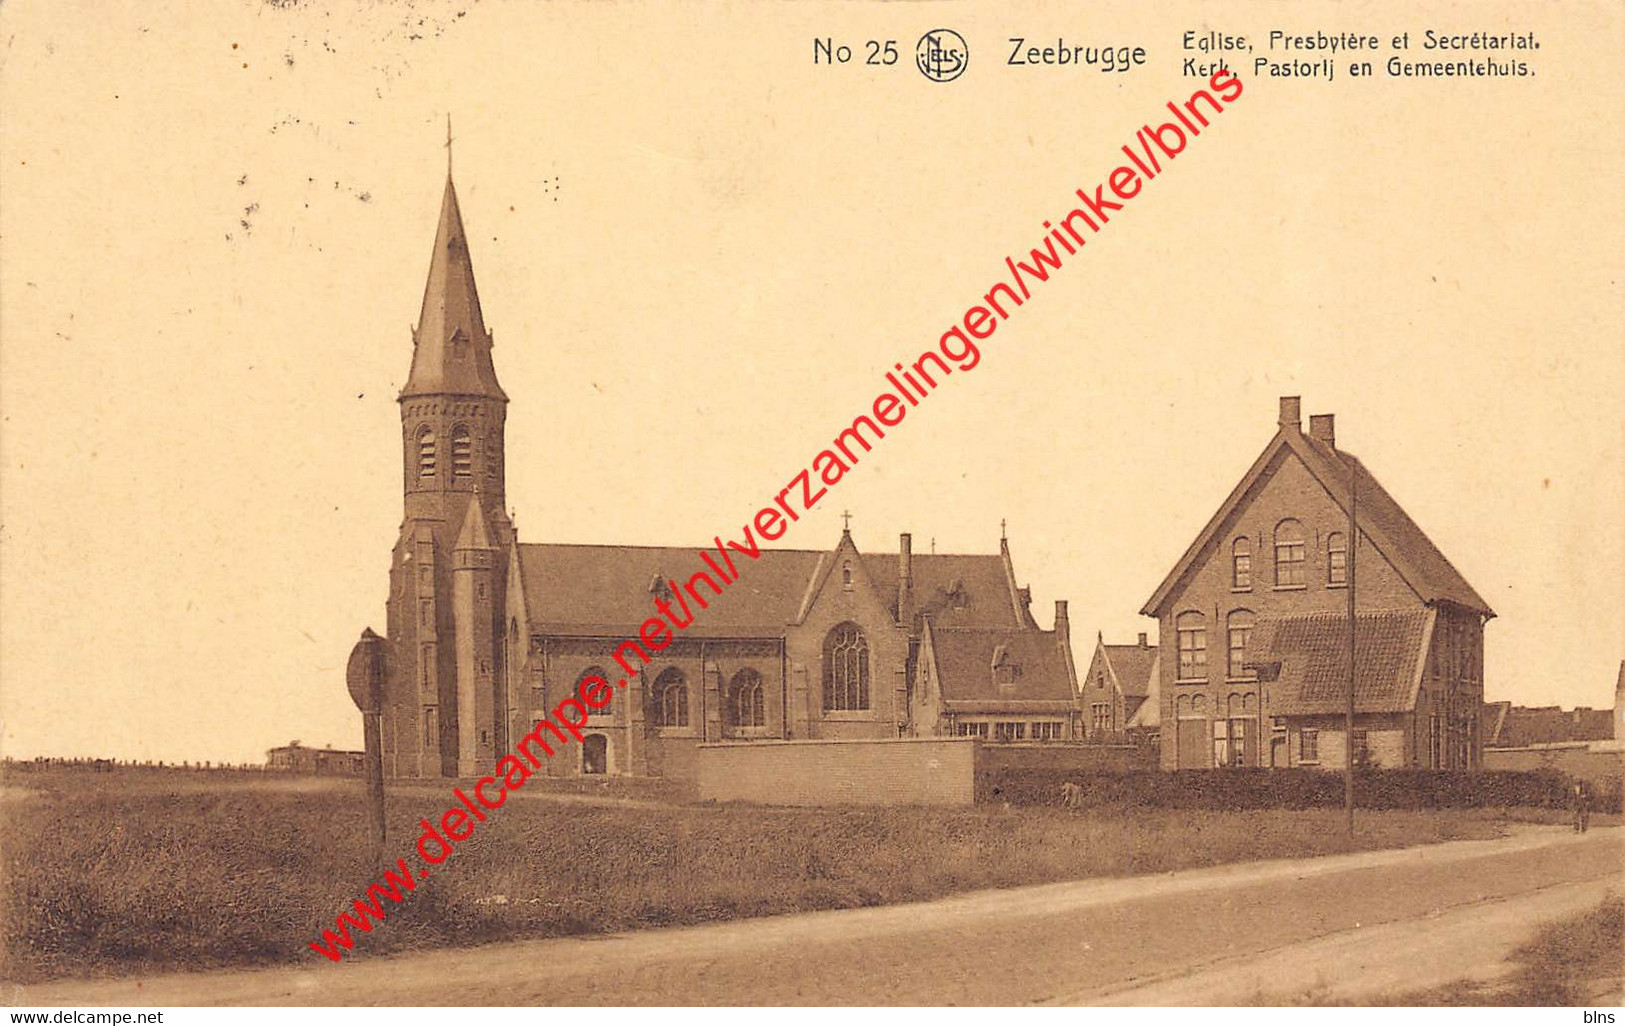 Kerk Pastorij En Gemeentehuis - Zeebrugge - Zeebrugge